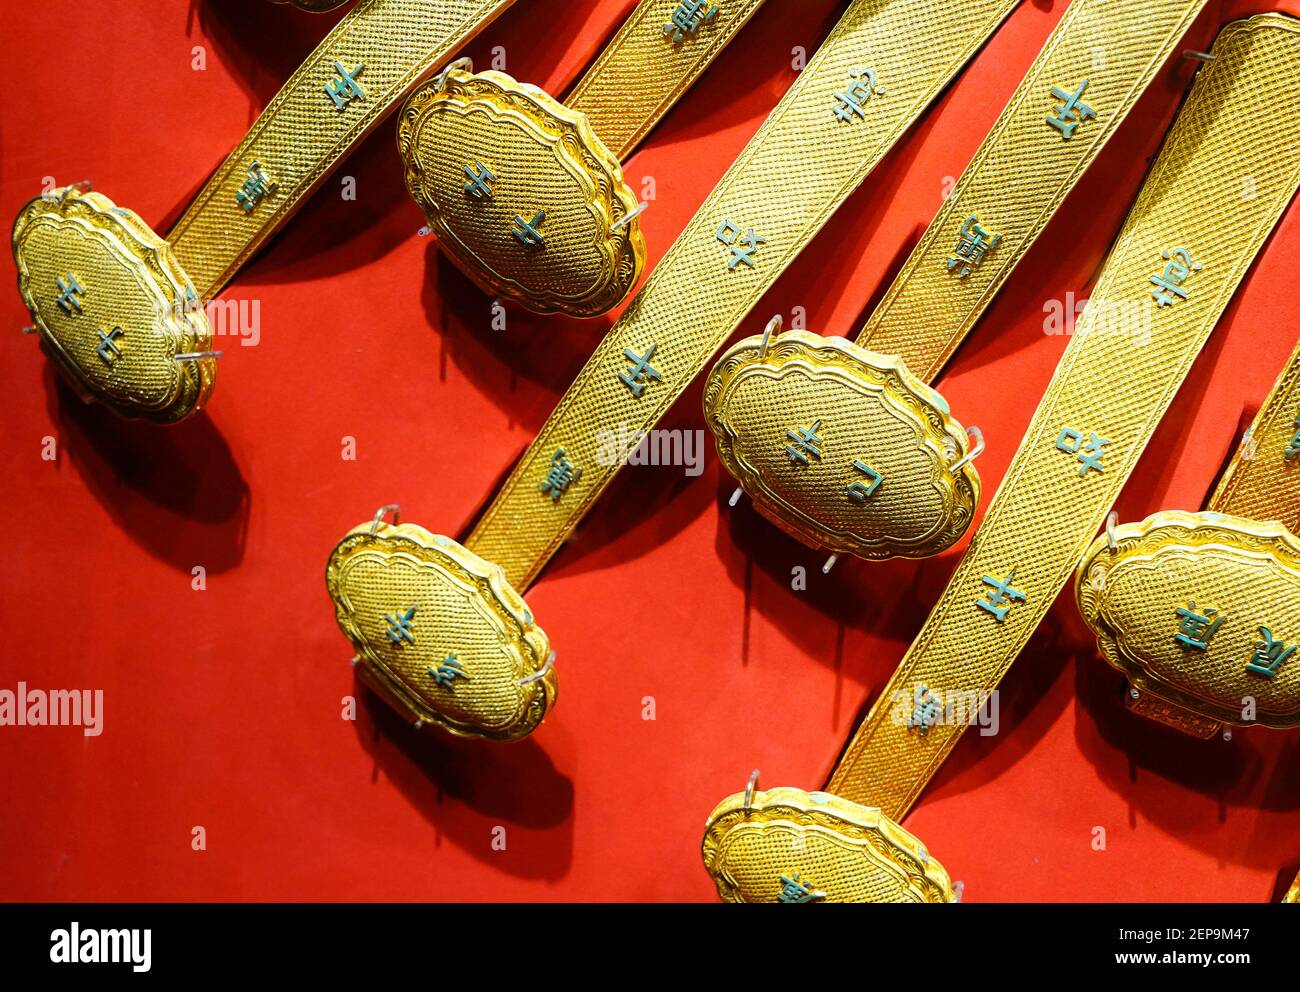 Un cadeau pour l'anniversaire de l'empereur Qianlong, le ruyi doré, est  présenté au Musée du Palais à Beijing, en Chine, le 20 novembre 2019. Le  cadeau du 60ème anniversaire de l'empereur Qianlong